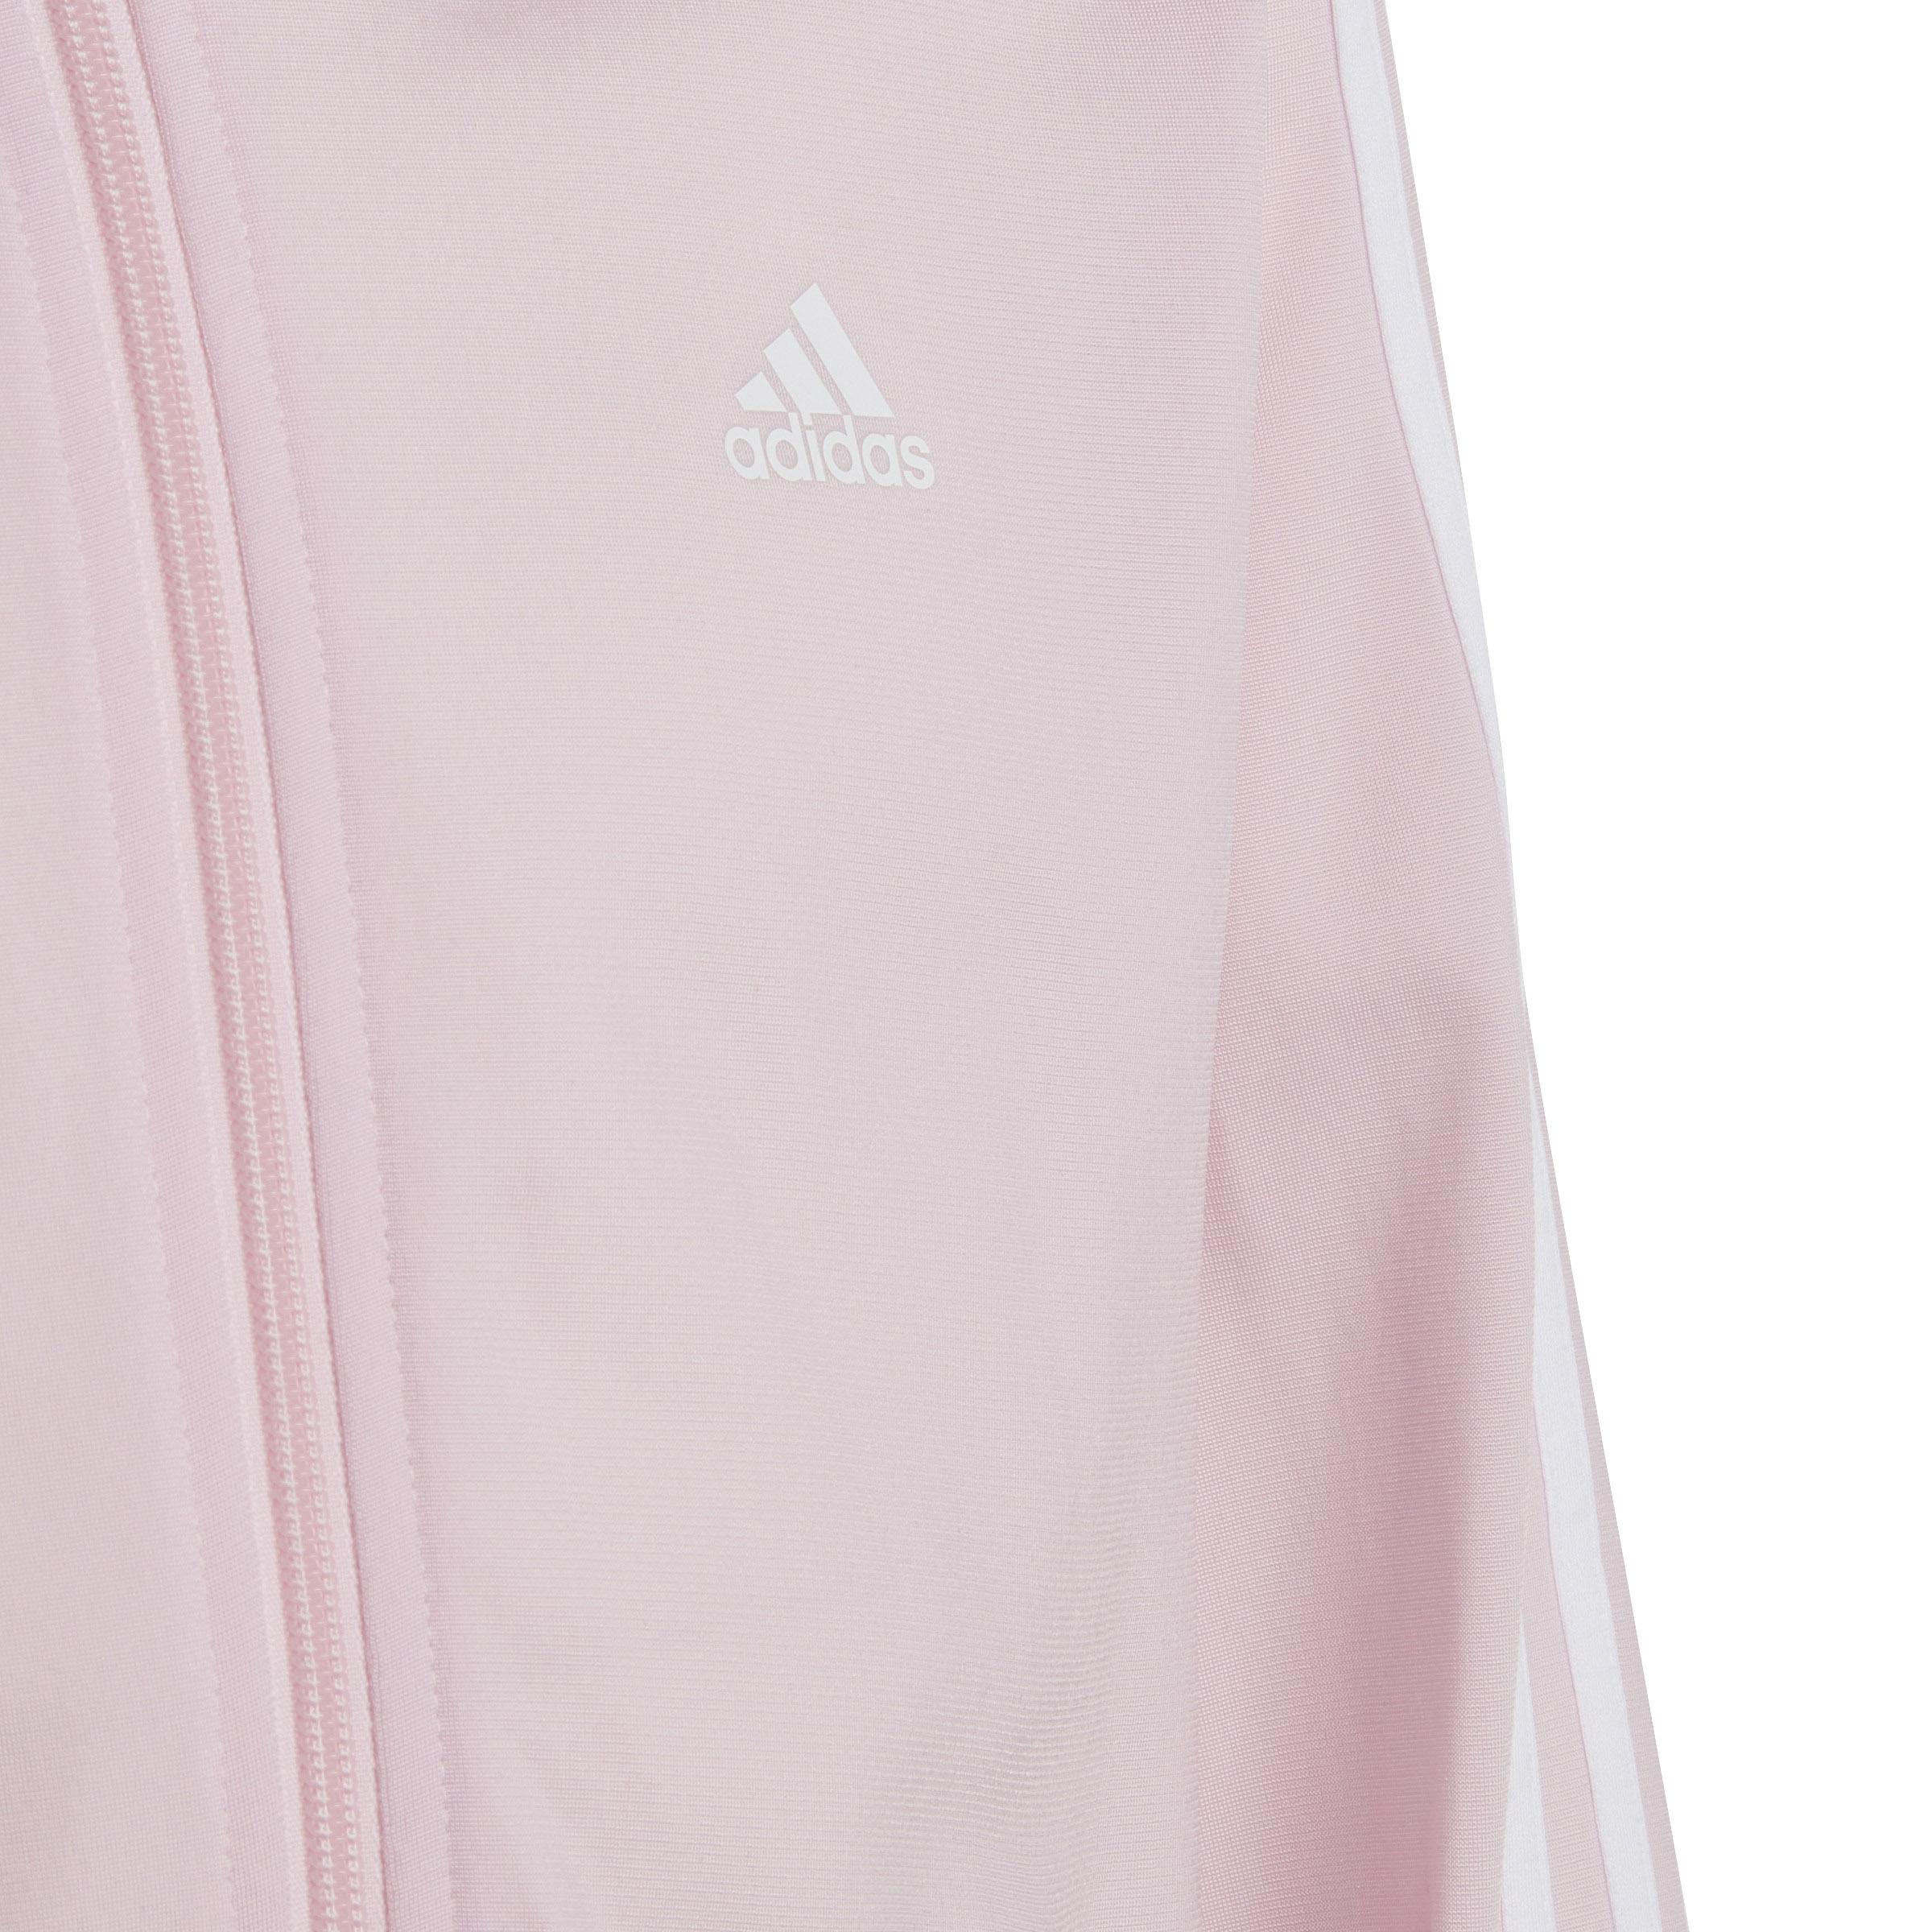 Adidas Trainingsanzug Mädchen clear Online fuchsia-white lucid SportScheck Shop kaufen pink-semi im von